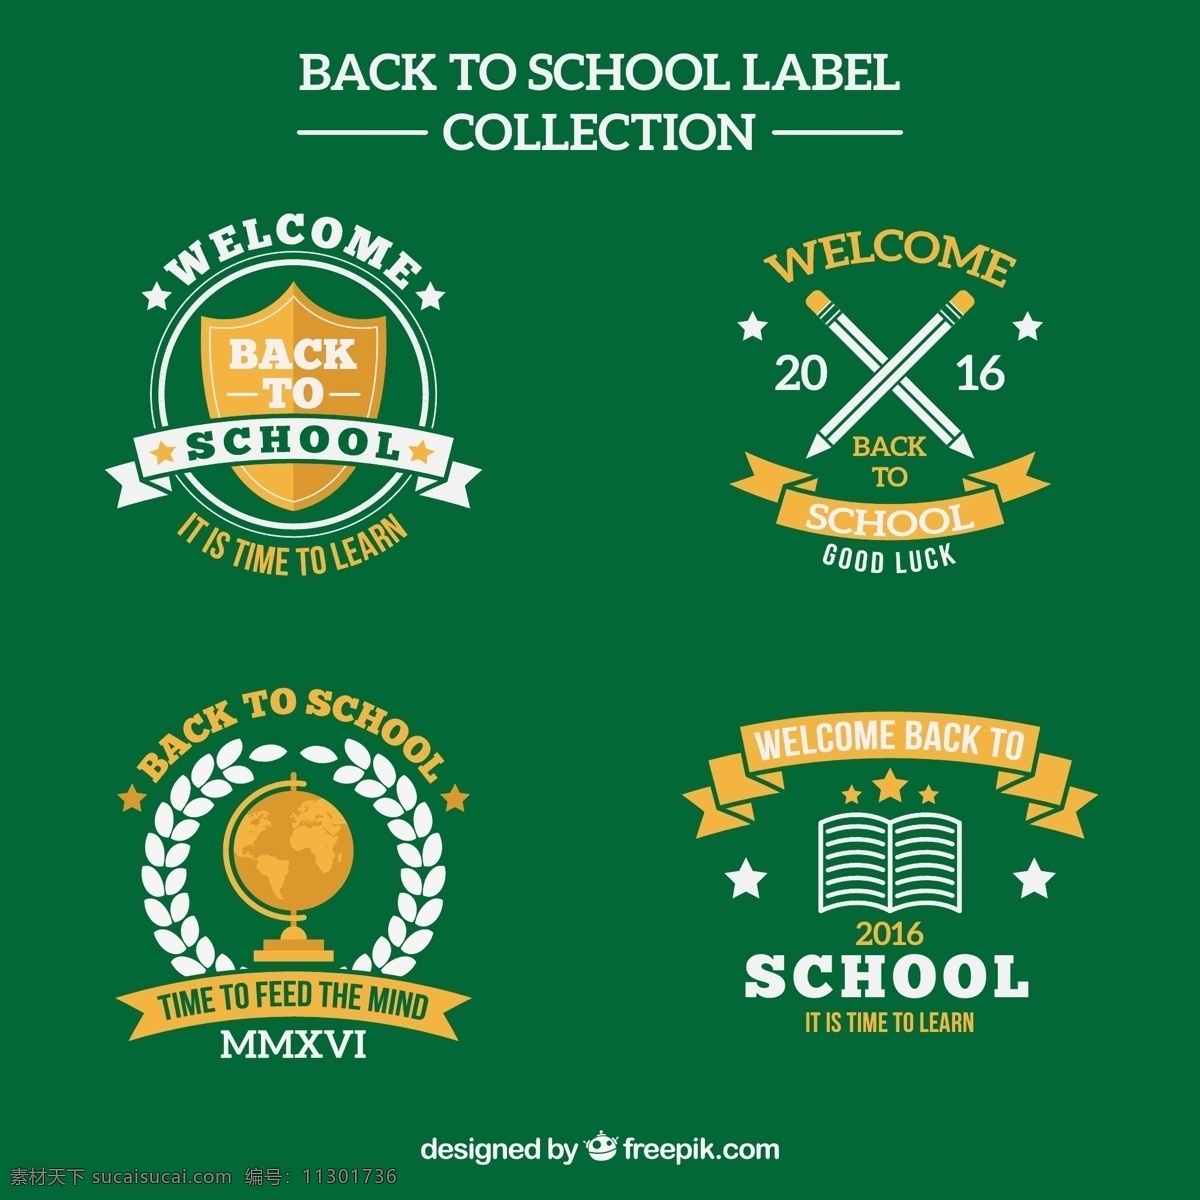 绿色 背景 下 学校 标签 收集 标志 书 徽章 教育 邮票 贴纸 学生 科学 铅笔 袋子 背对学校 印章 学习